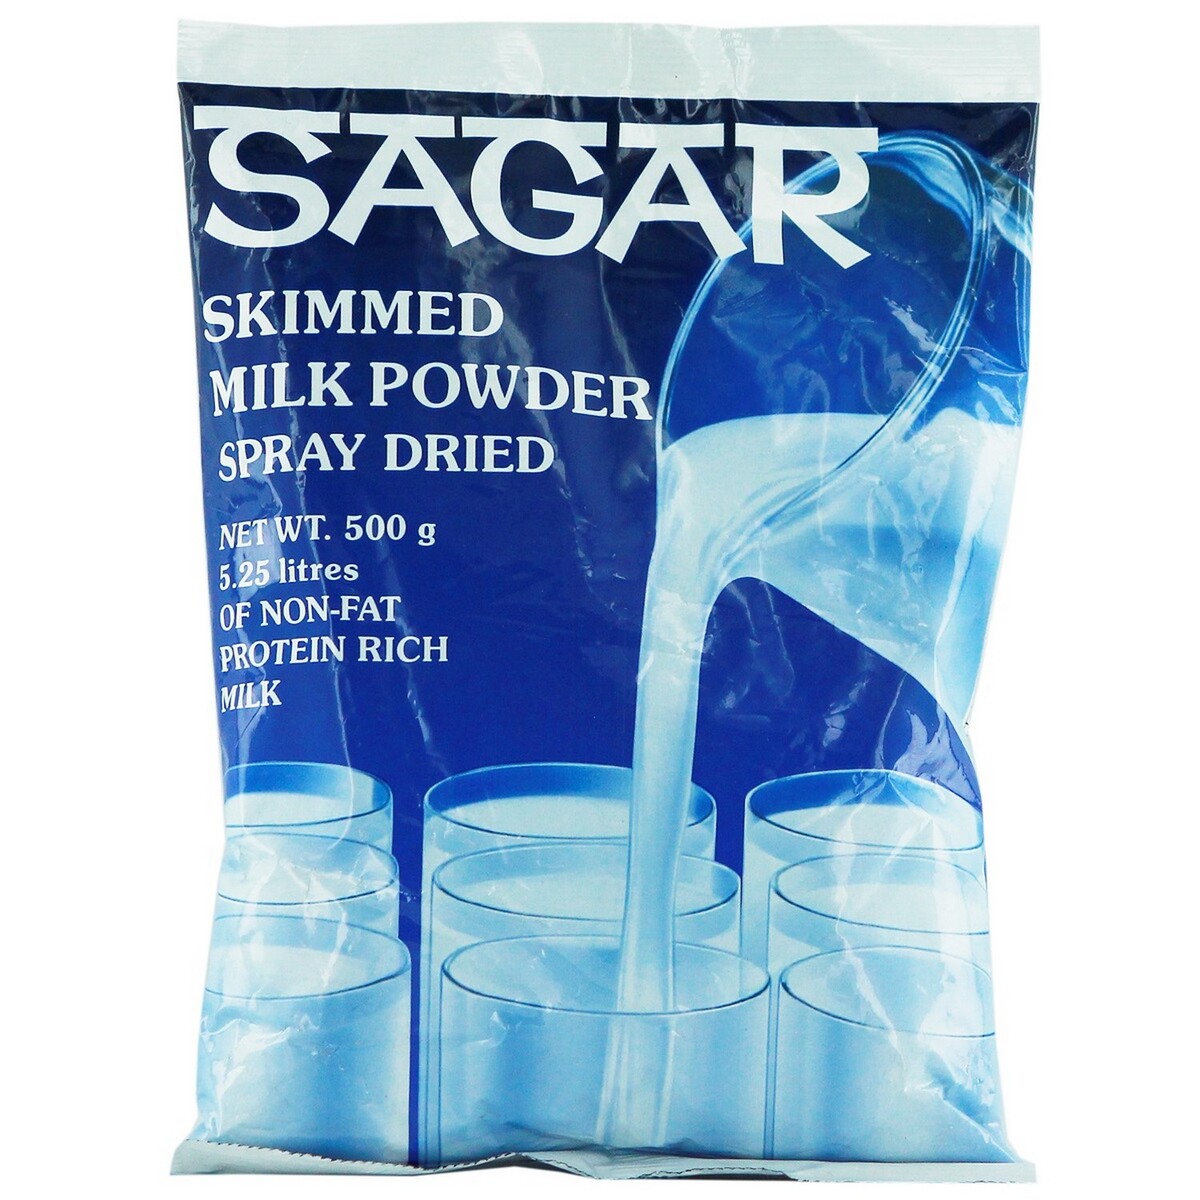 Sagar Skimmed Milk Powder Pouch 500g